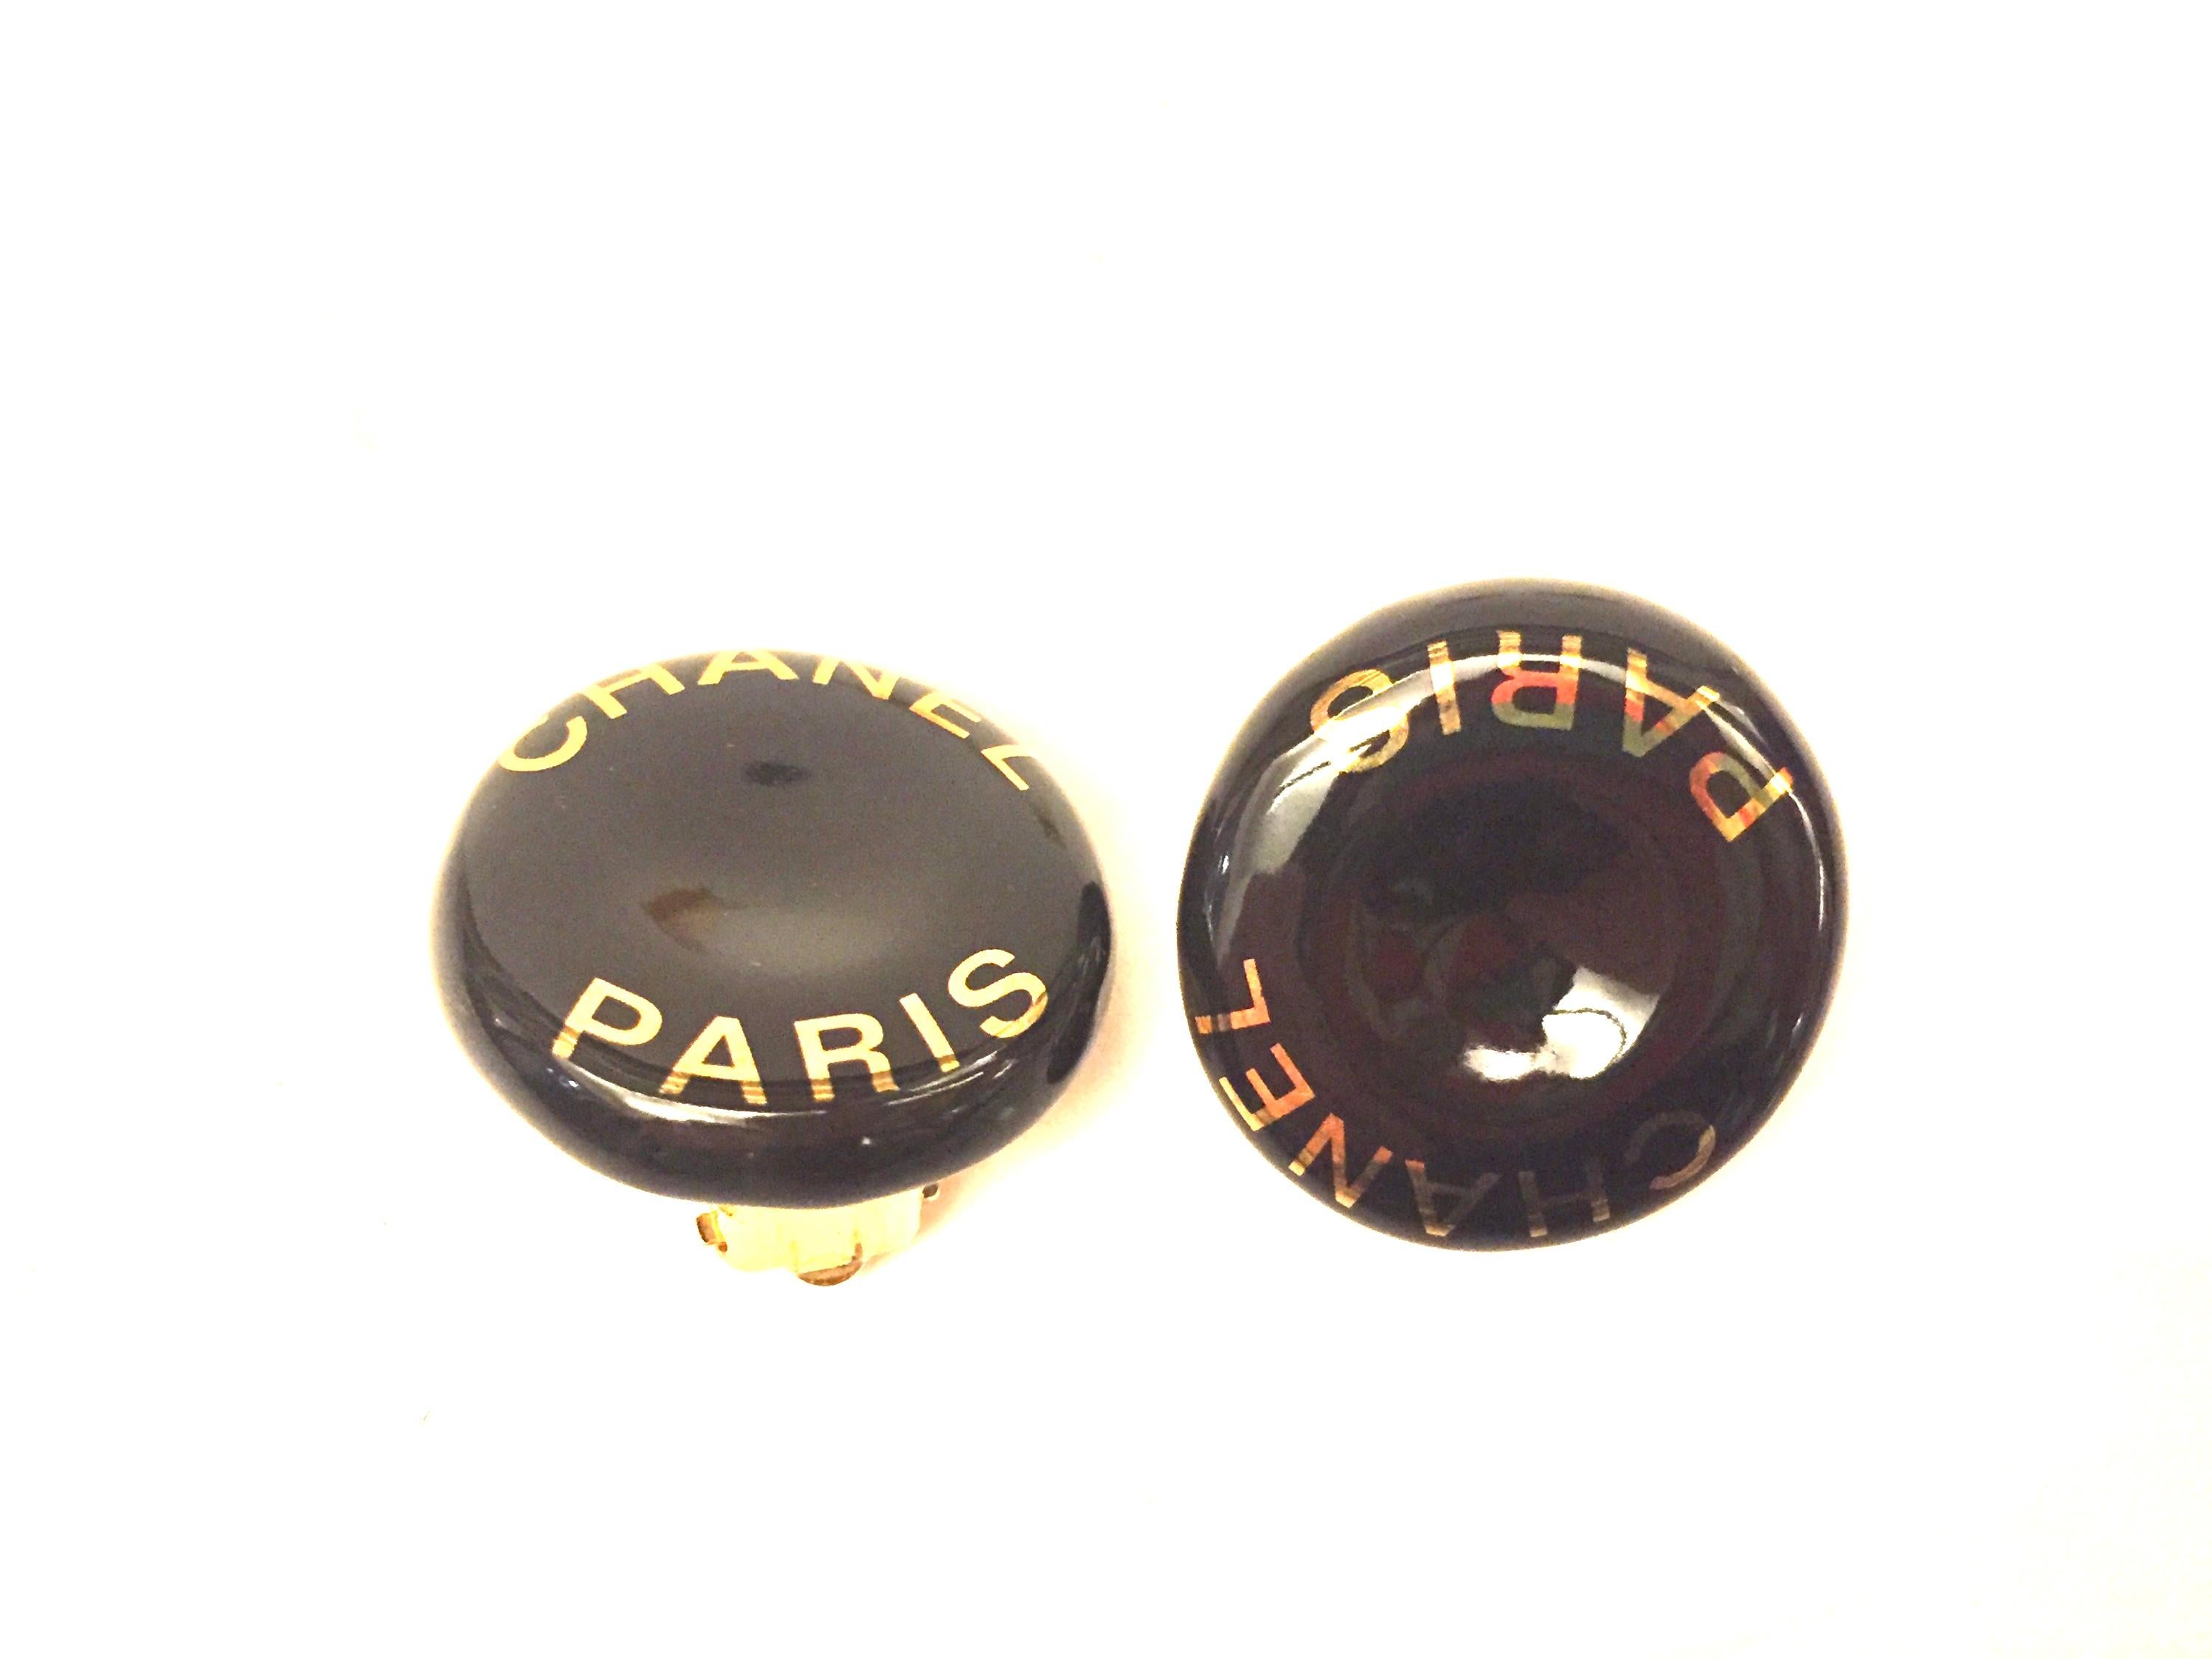 - Vintage 1997A Chanel  “Chanel Paris” clip on earrings. 

- Diameter: 2cm. 